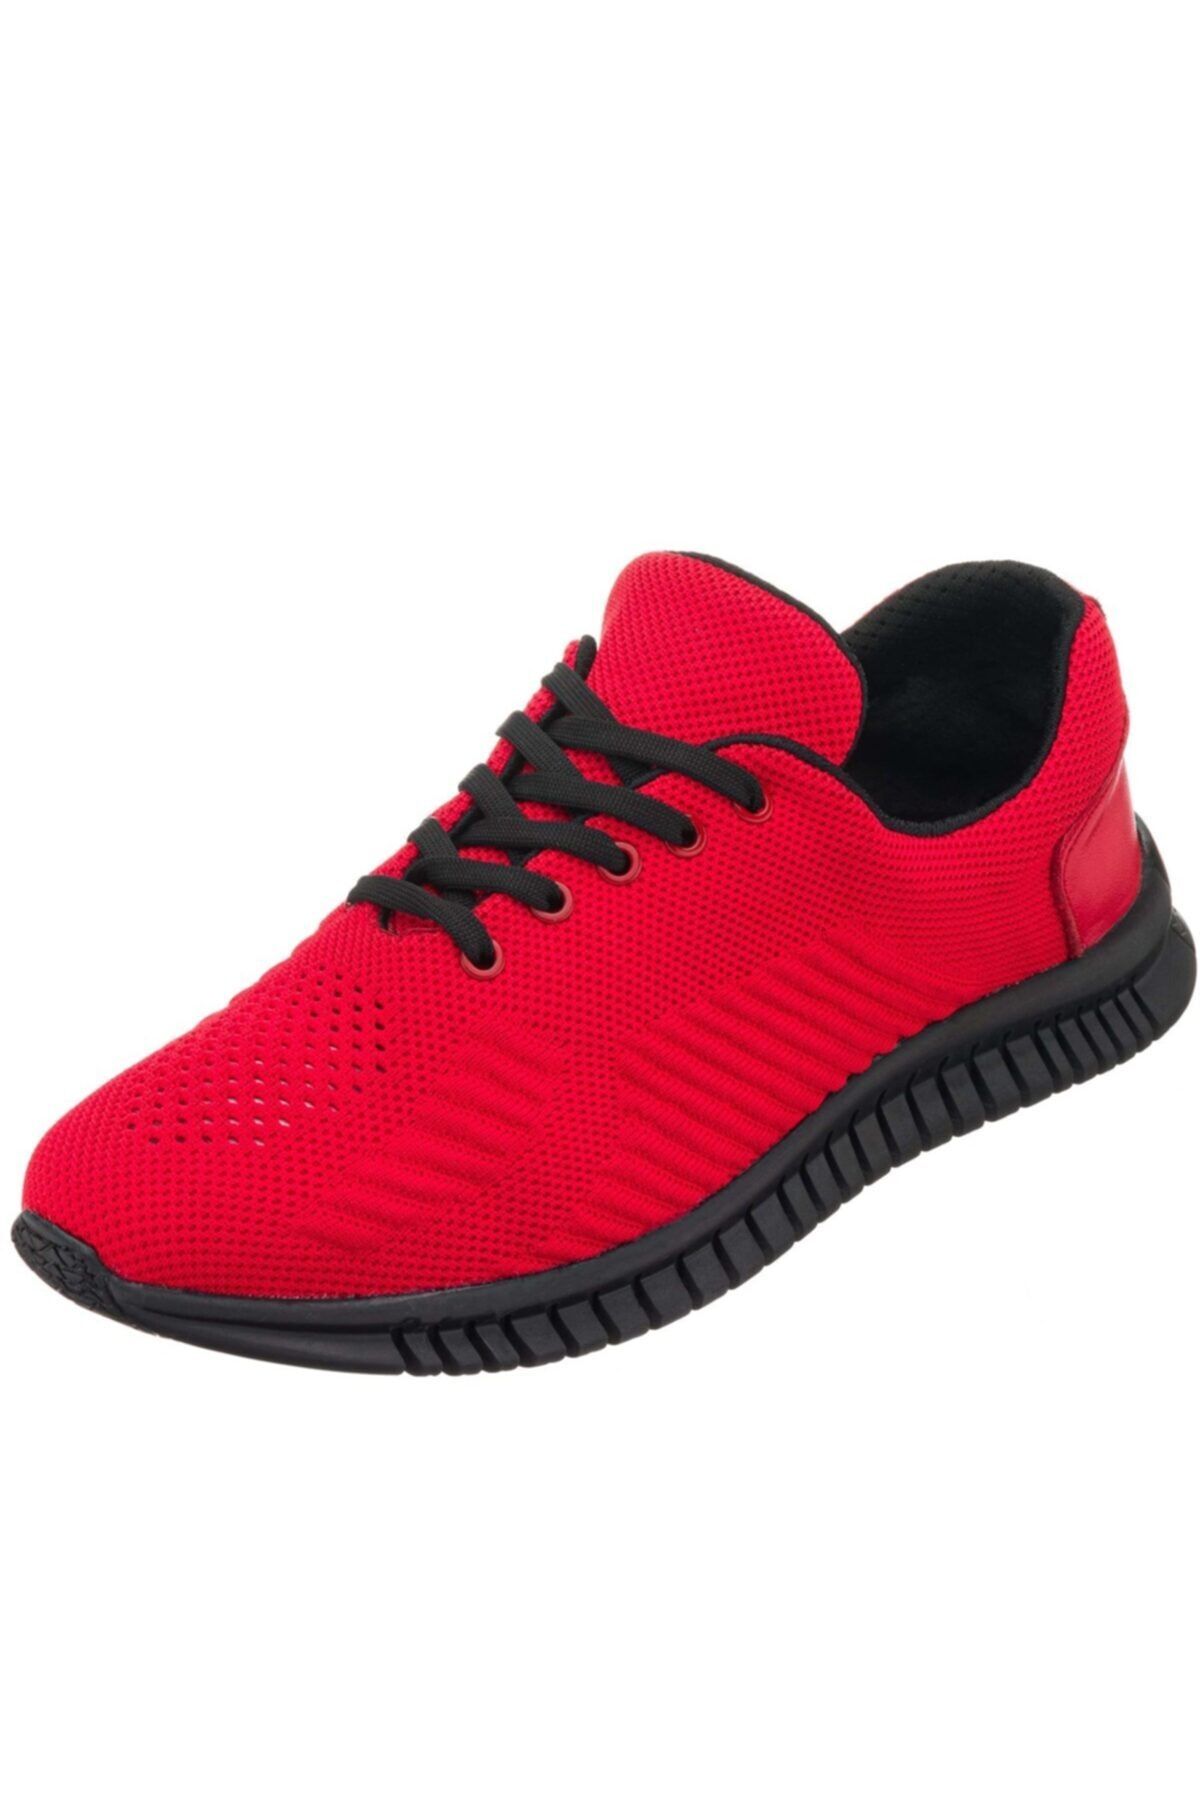 İriadam Kırmızı Kauçuk Taban Büyük Numara Erkek Spor Ayakkabı